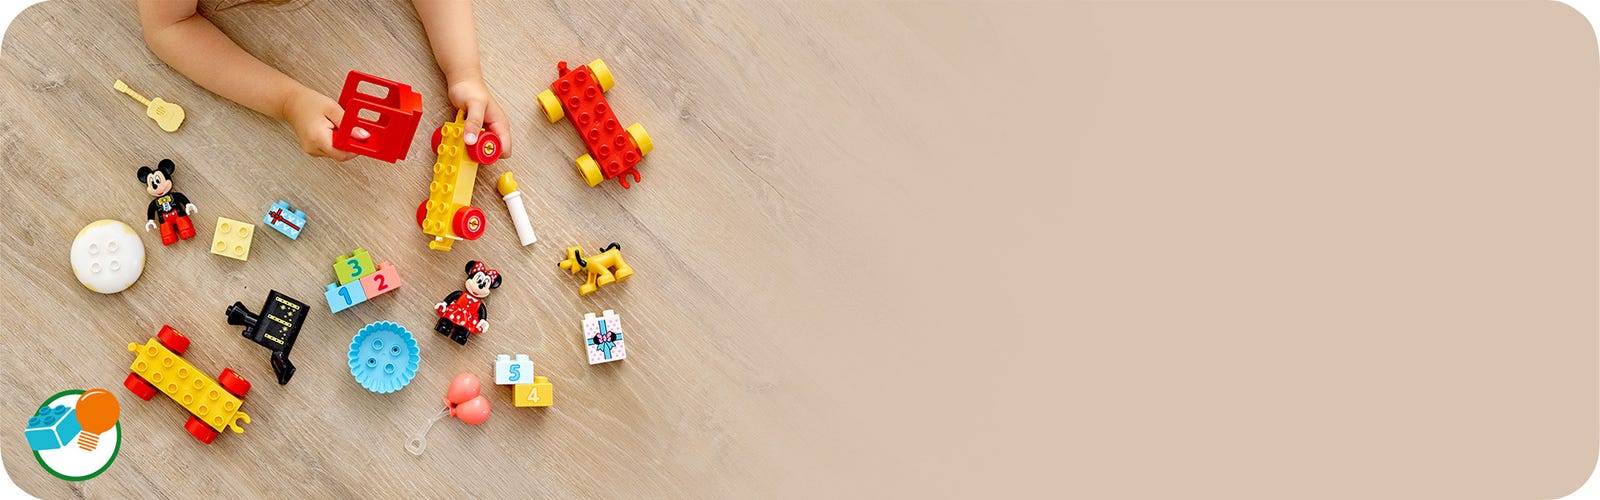 10941 - LEGO® DUPLO - Le train d'anniversaire de Mickey et Minnie LEGO :  King Jouet, 1er Age LEGO - Jeux de construction